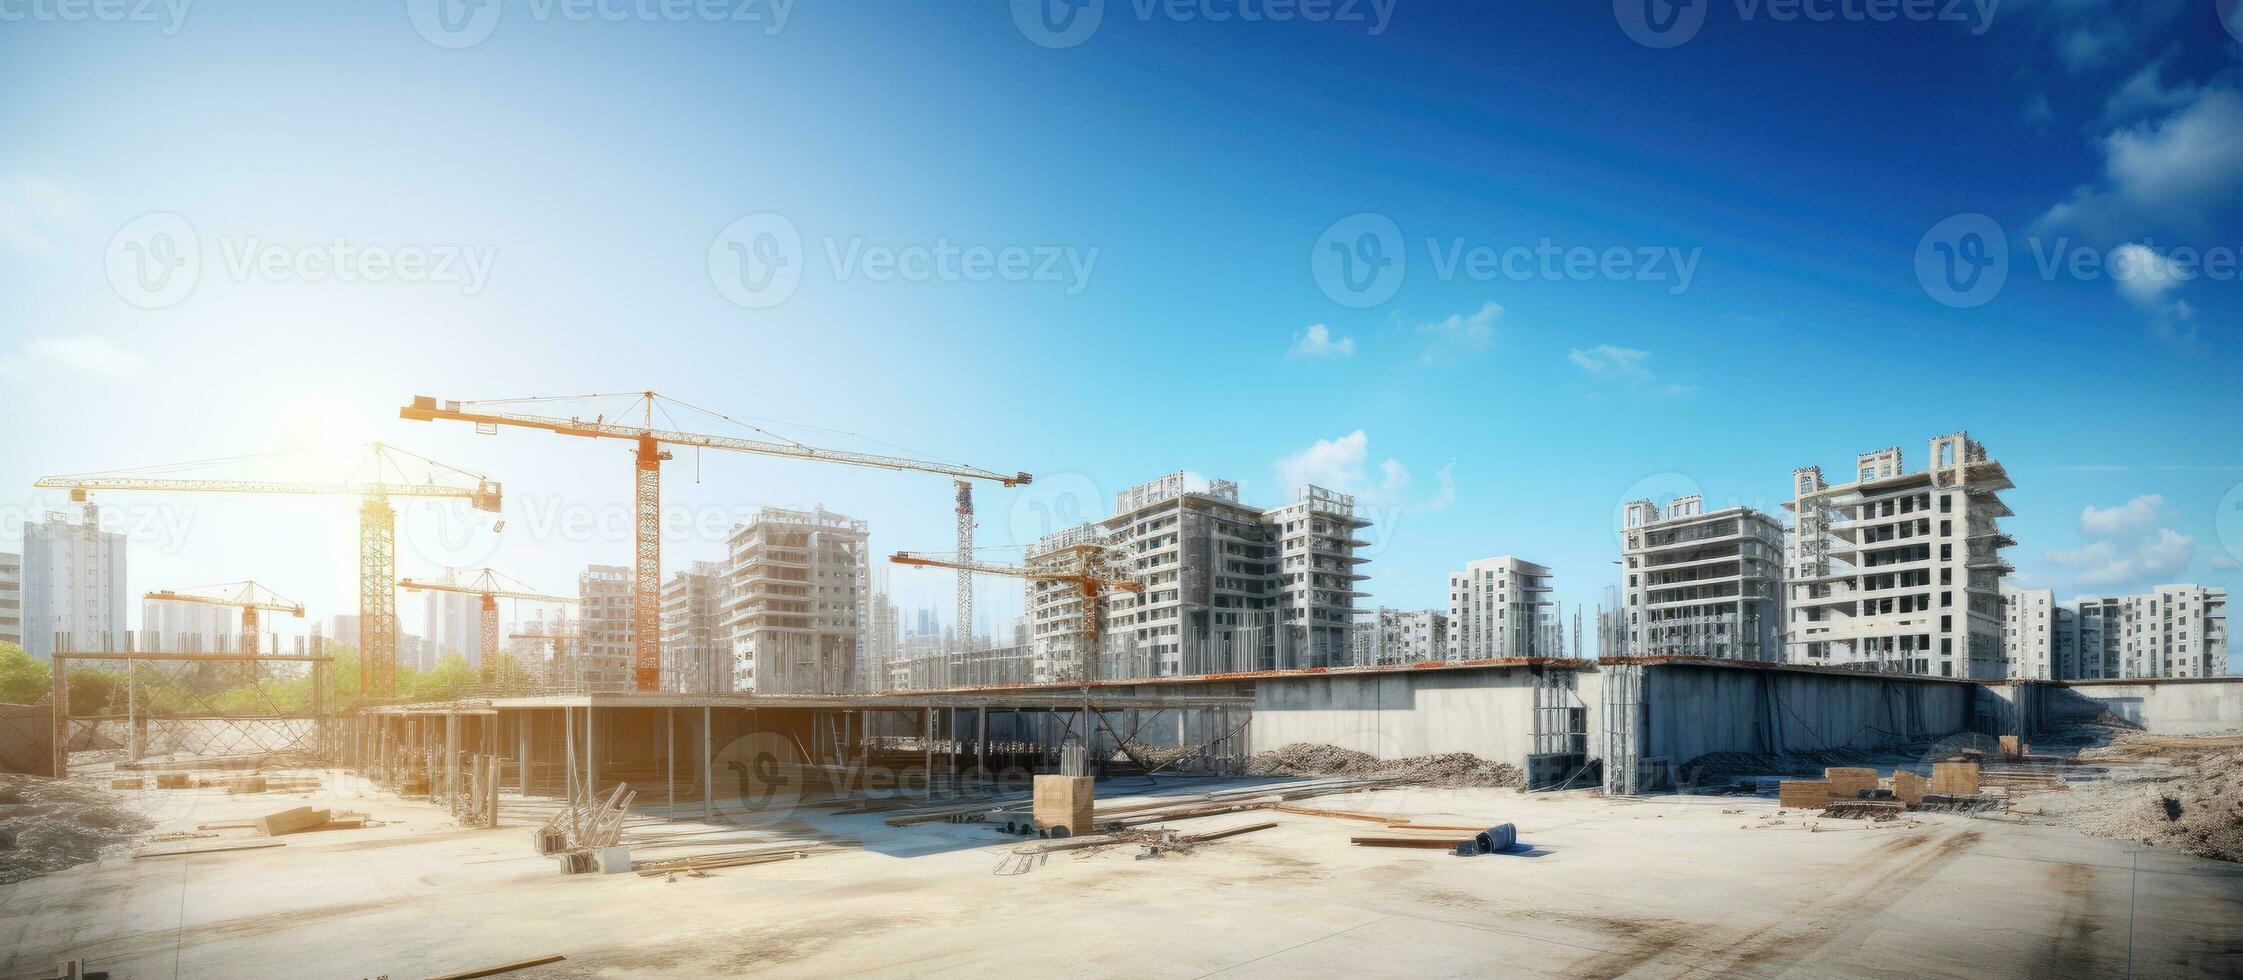 konstruktion webbplats med oavslutat bostads- byggnader och kopia Plats fångad använder sig av en bred vinkel lins under en blå himmel foto